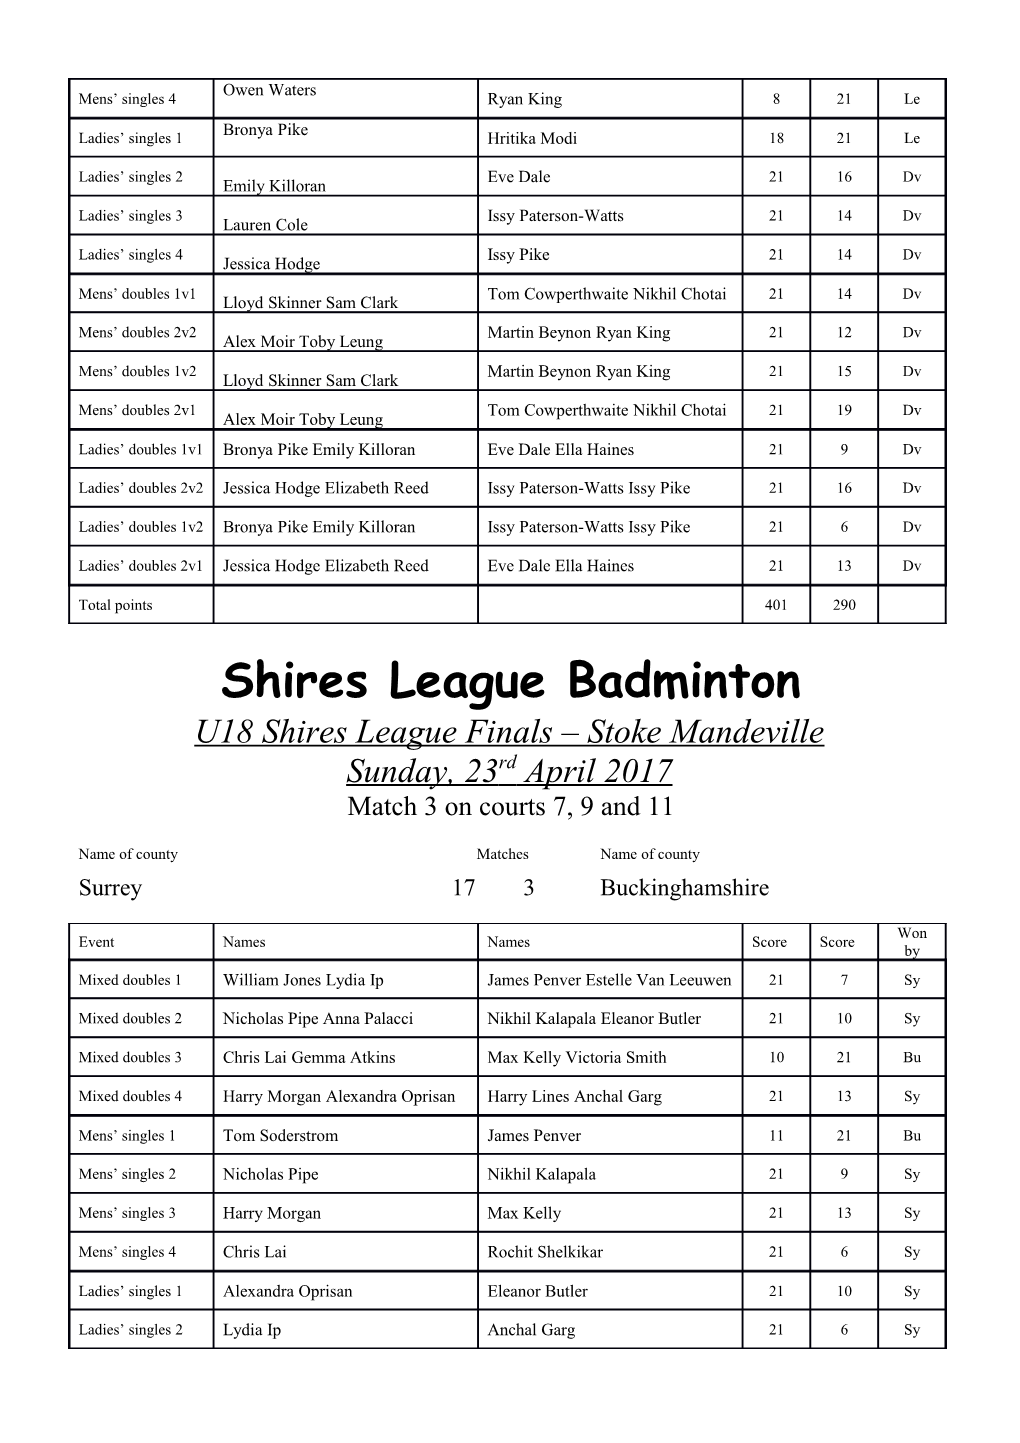 Shires League Badminton s1